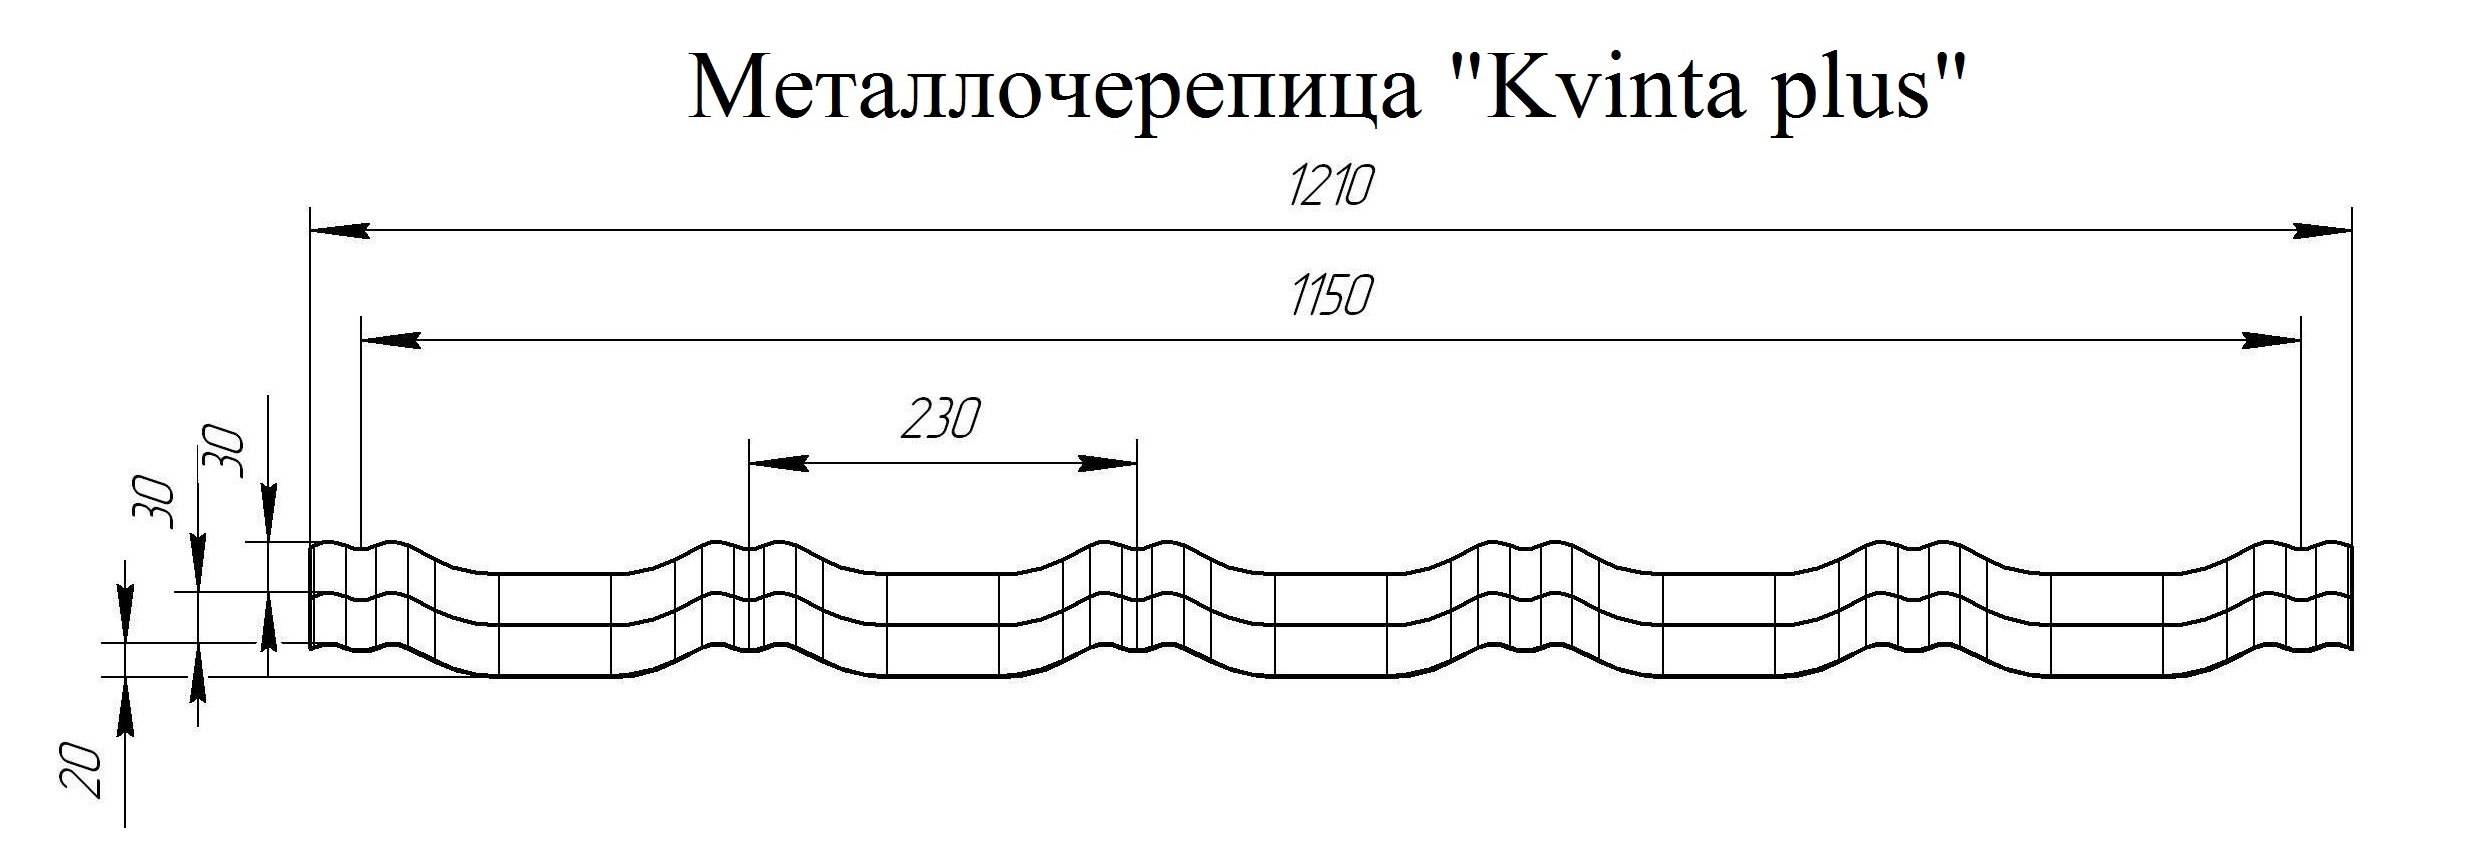 Металлочерепица Grand Line в профиле Kvinta plus